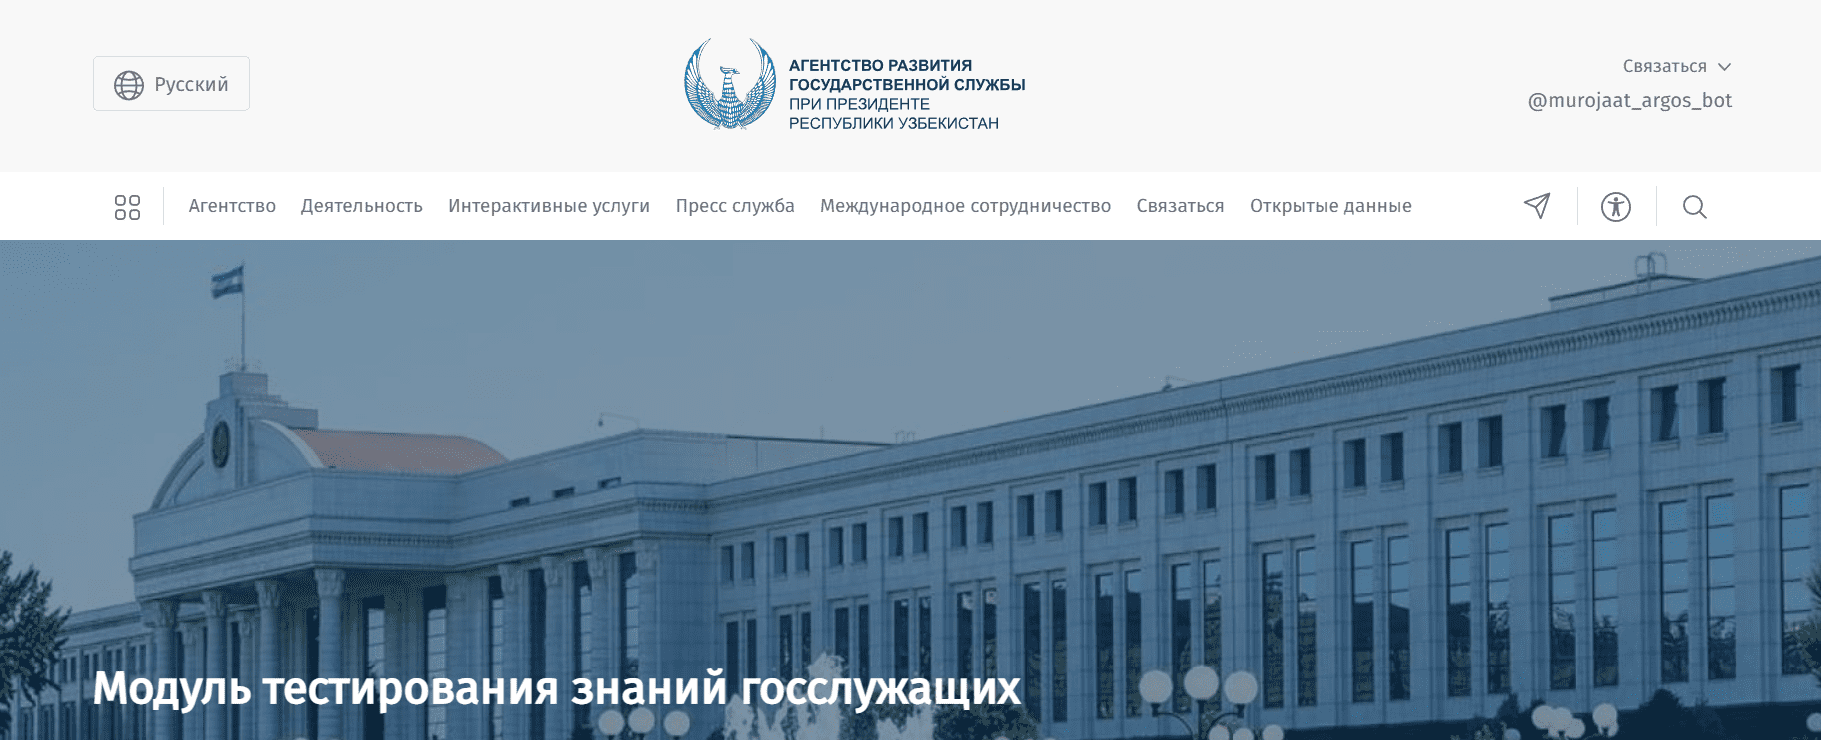 Агентство развития государственной службы (argos.uz)